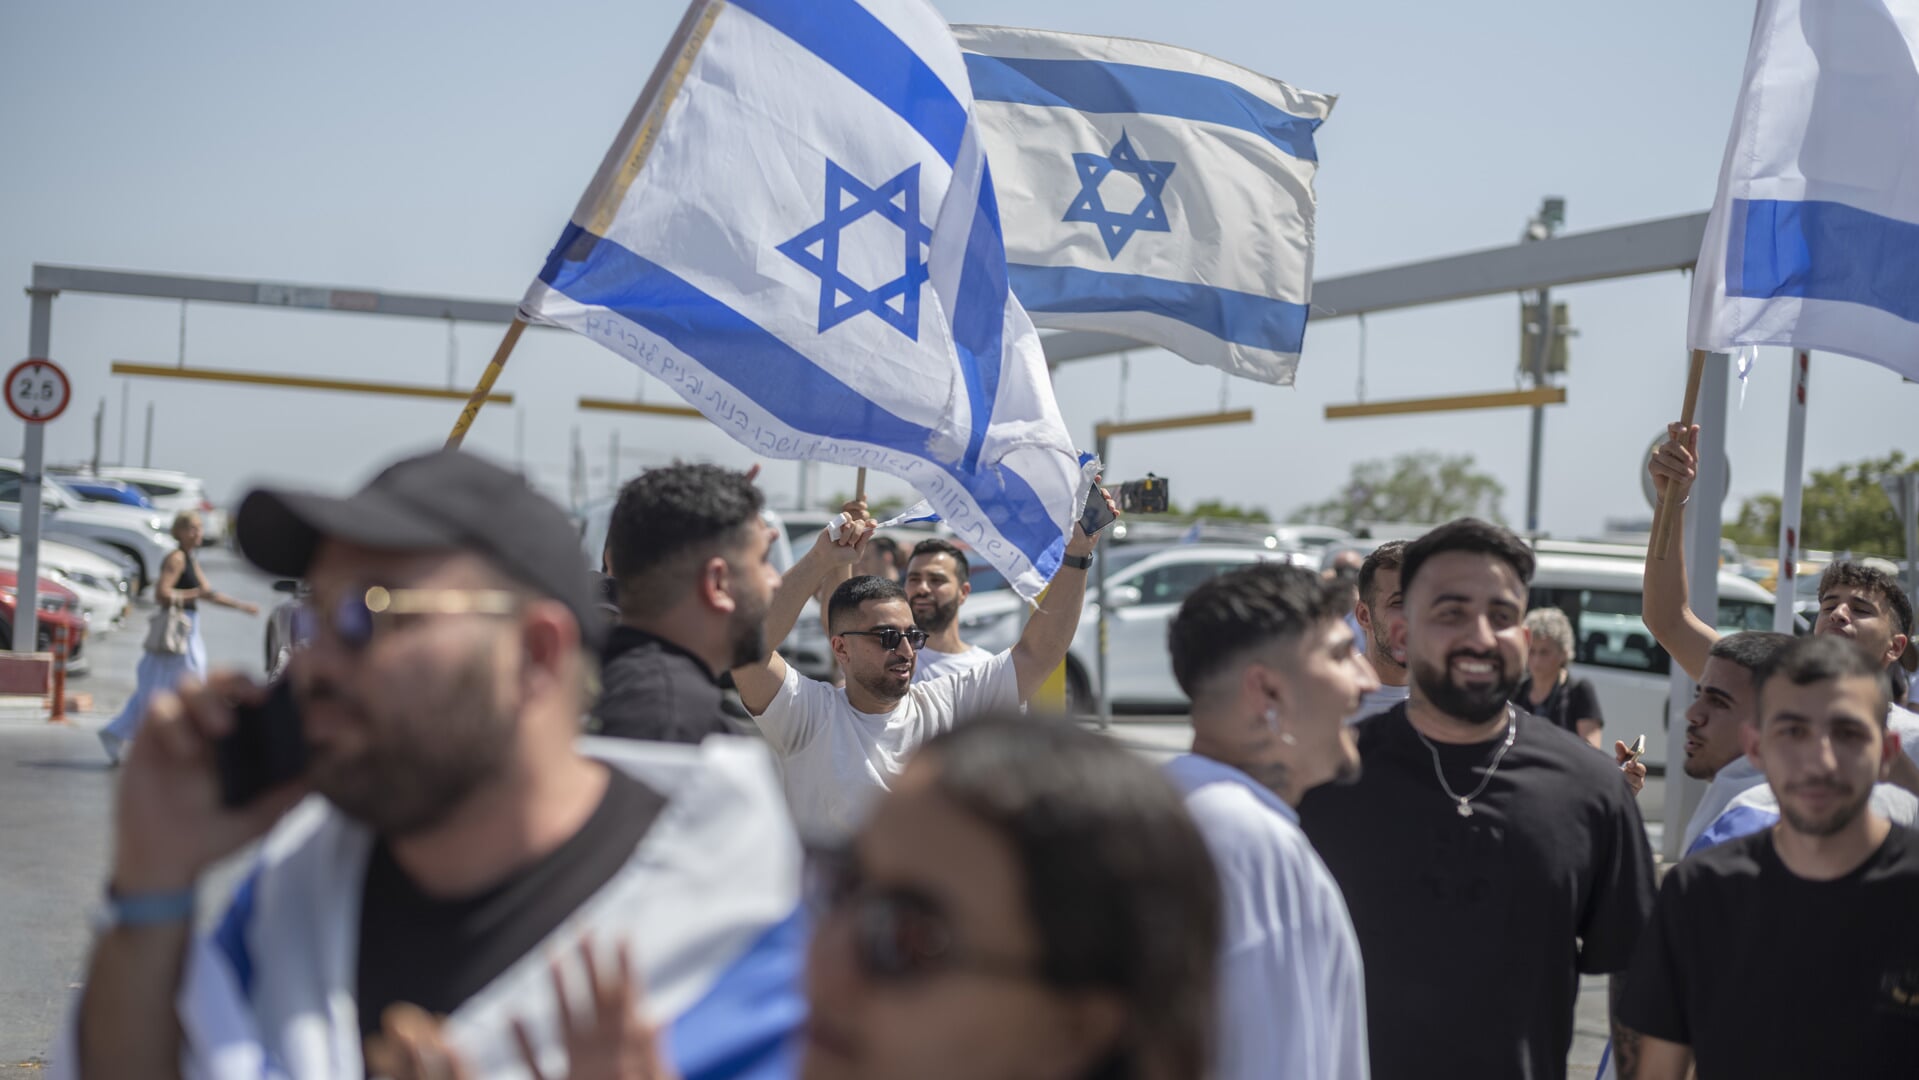 Jublende israelere svingede med flag, da gidslerne lørdag ankom til sygehuset i en forstad til Tel Aviv. Foto